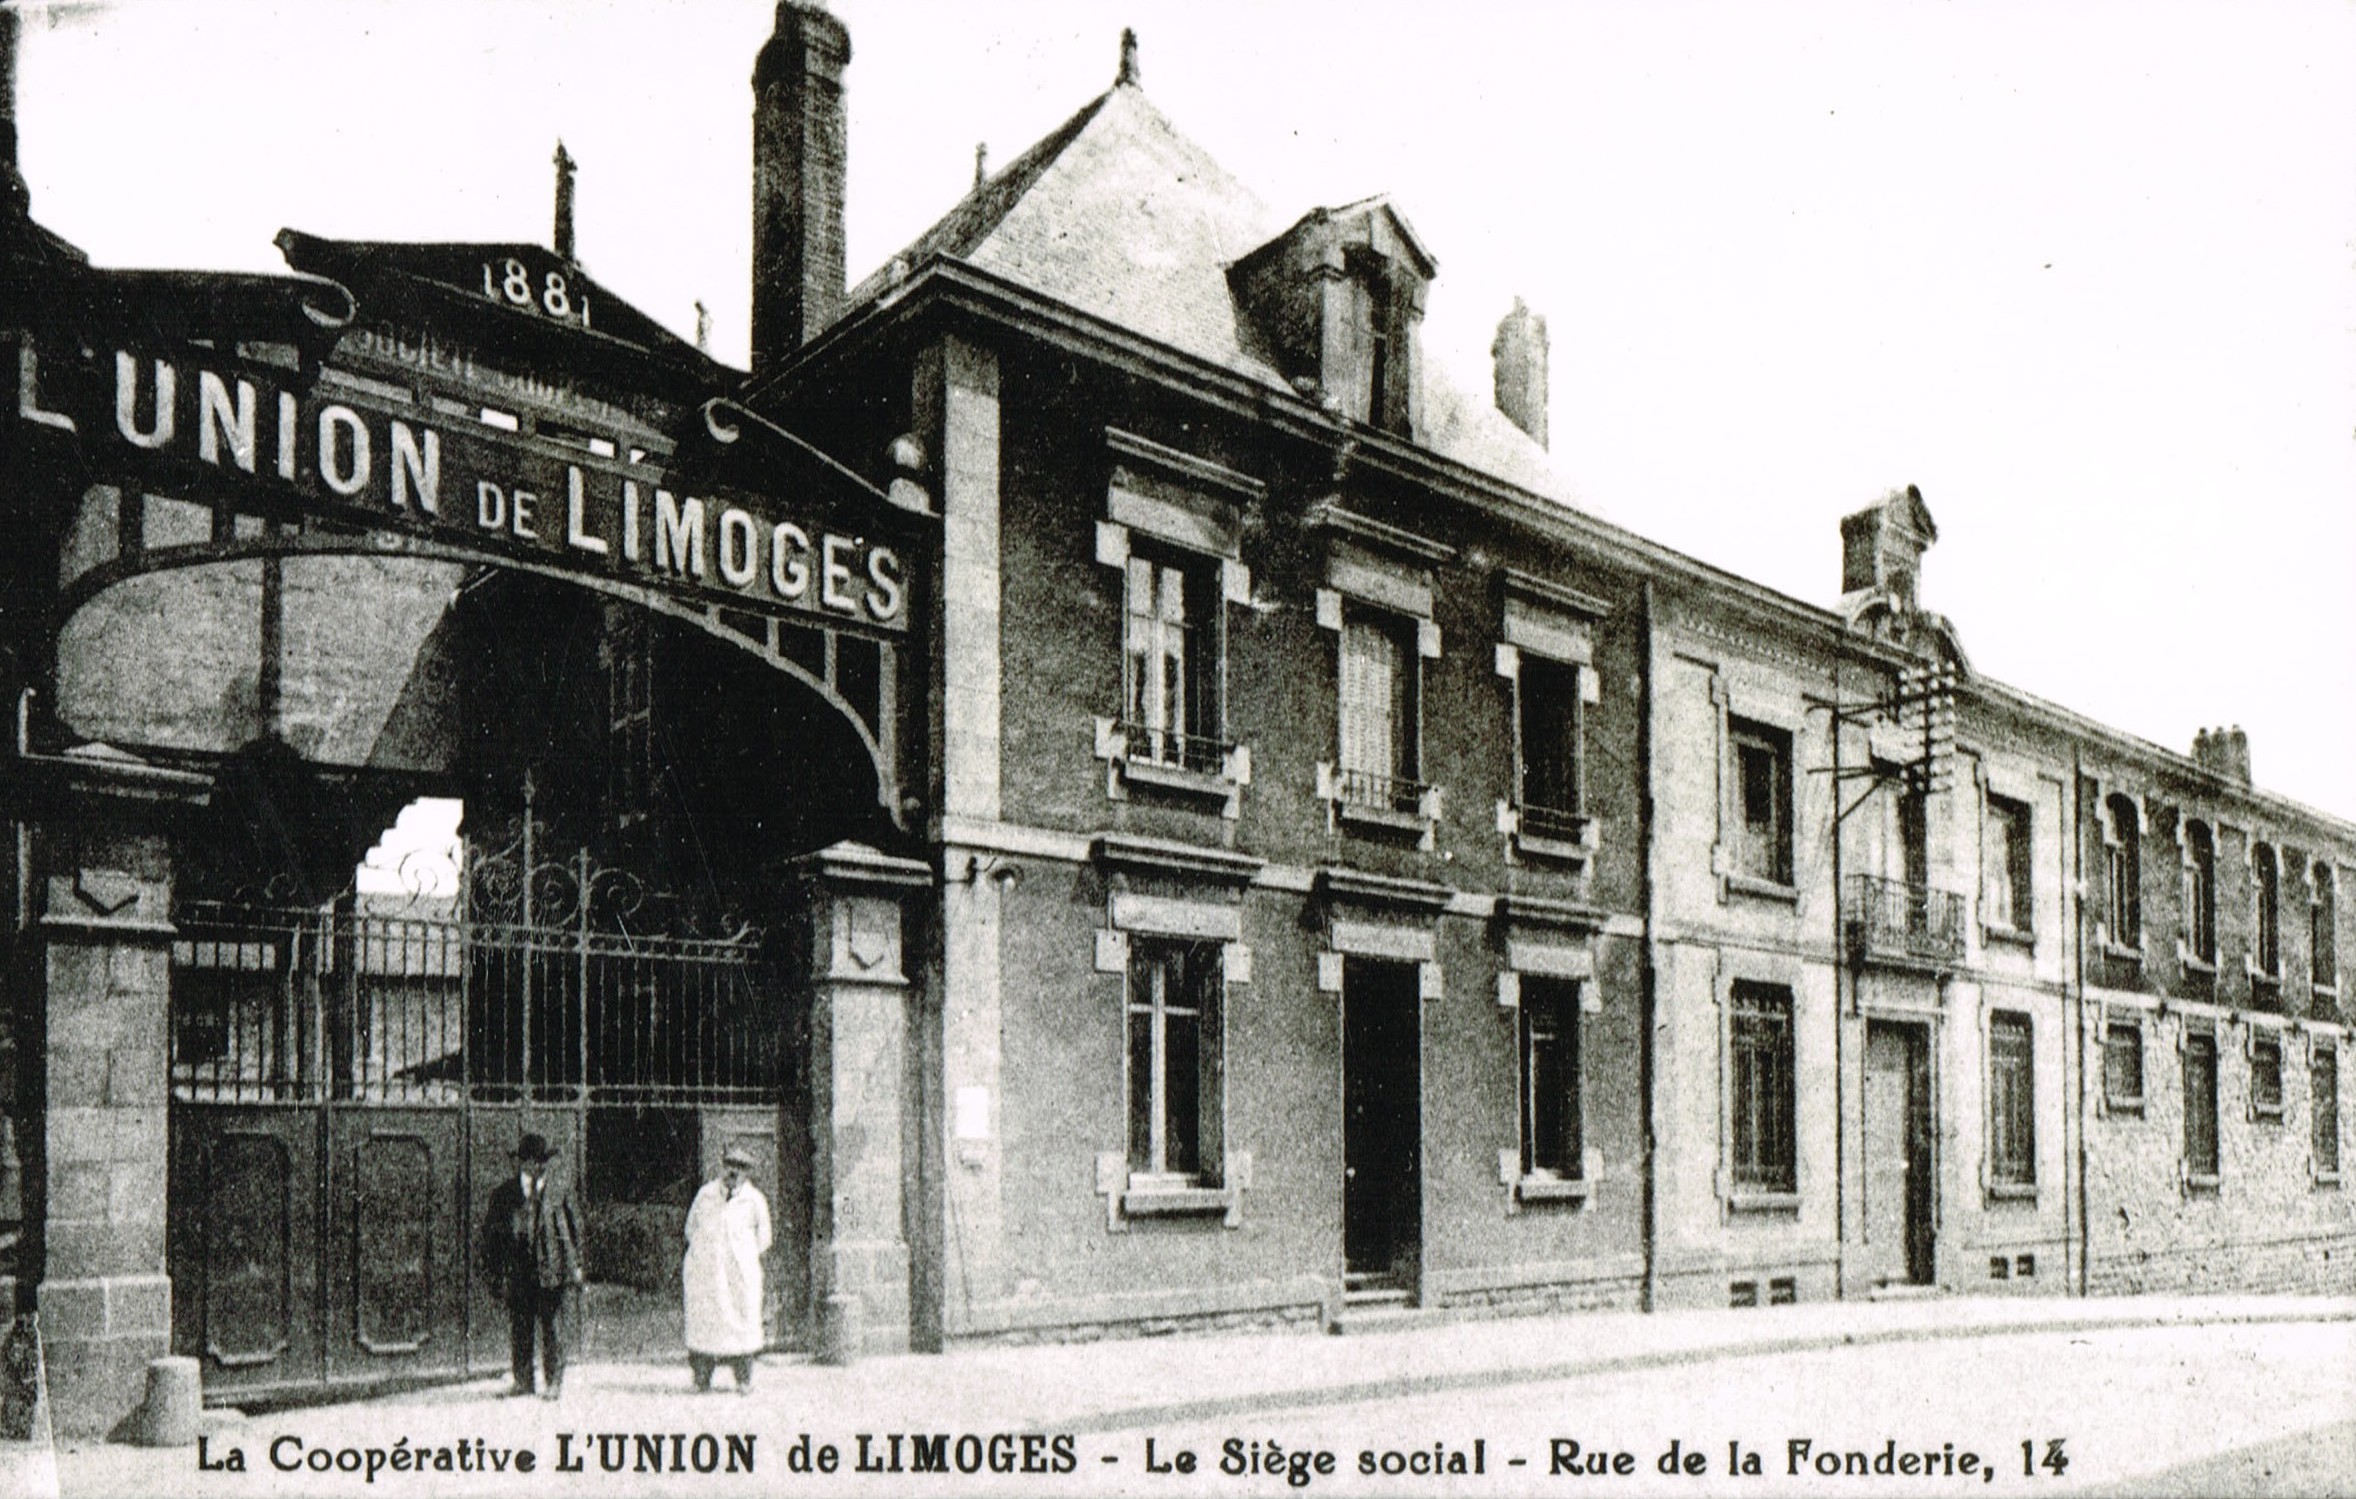 Union de Limoges